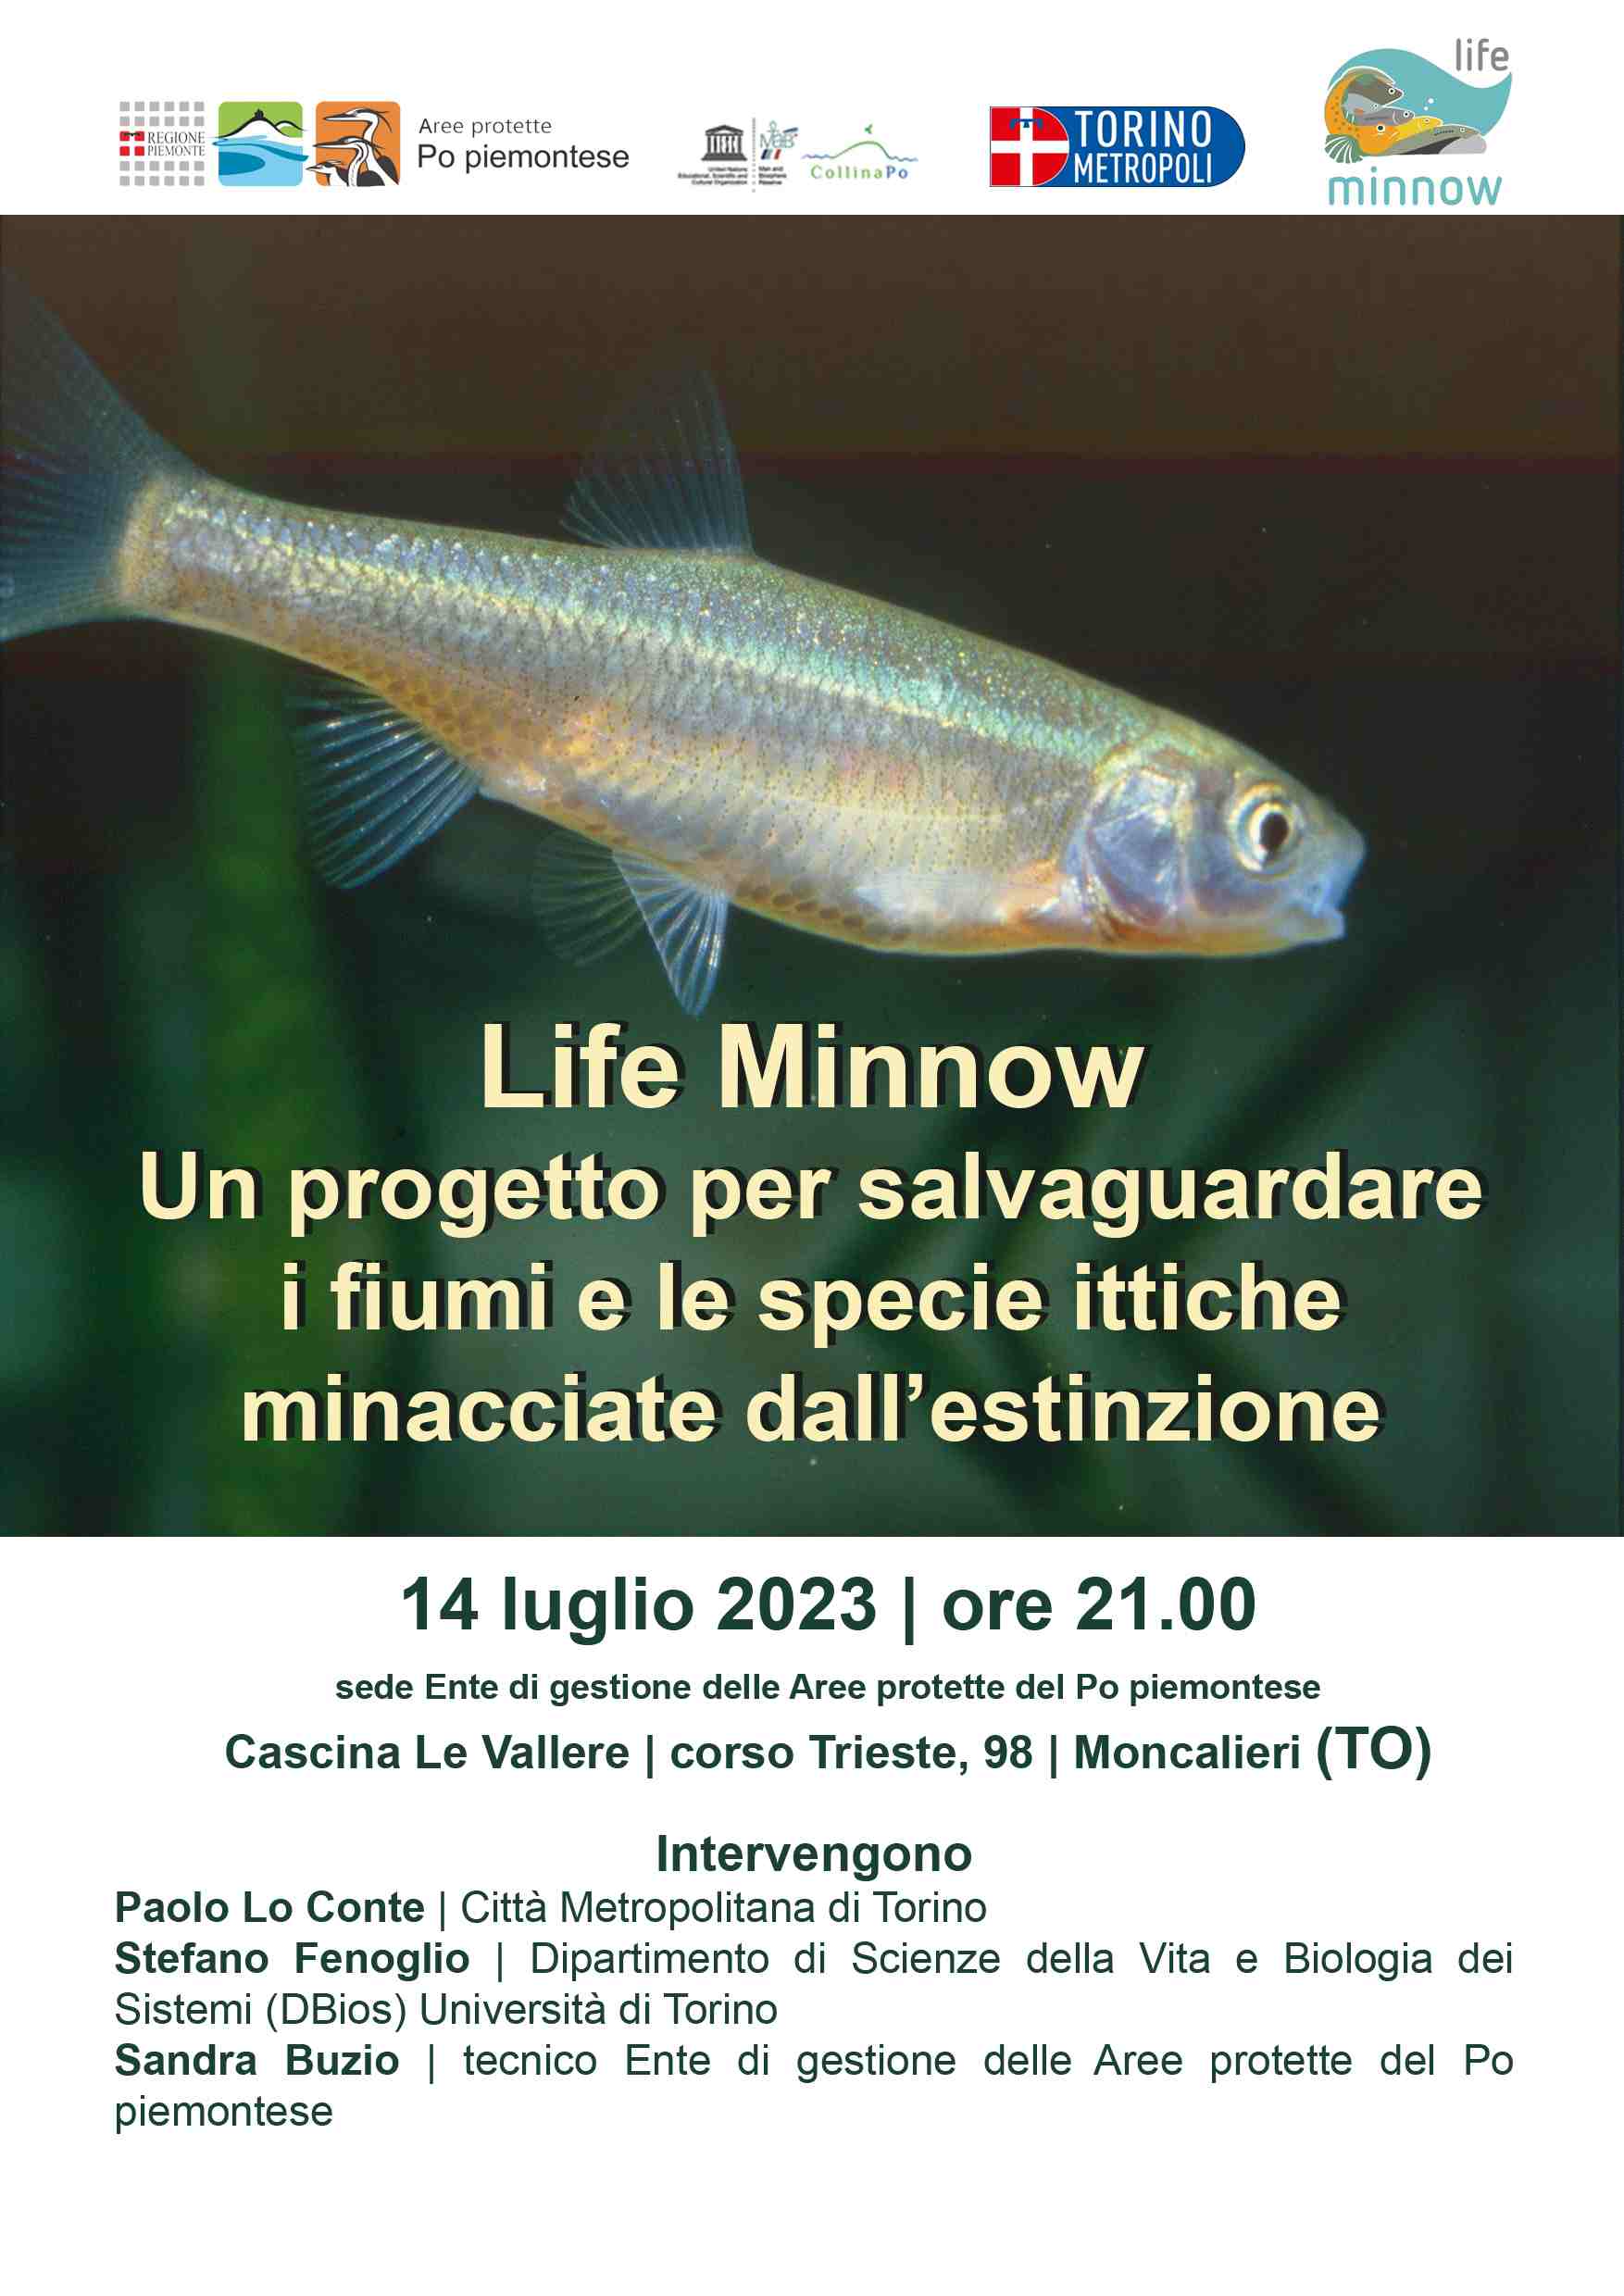 Life Minnow | Un progetto per salvaguardare i fiumi e le specie ittiche minacciate dall'estinzione